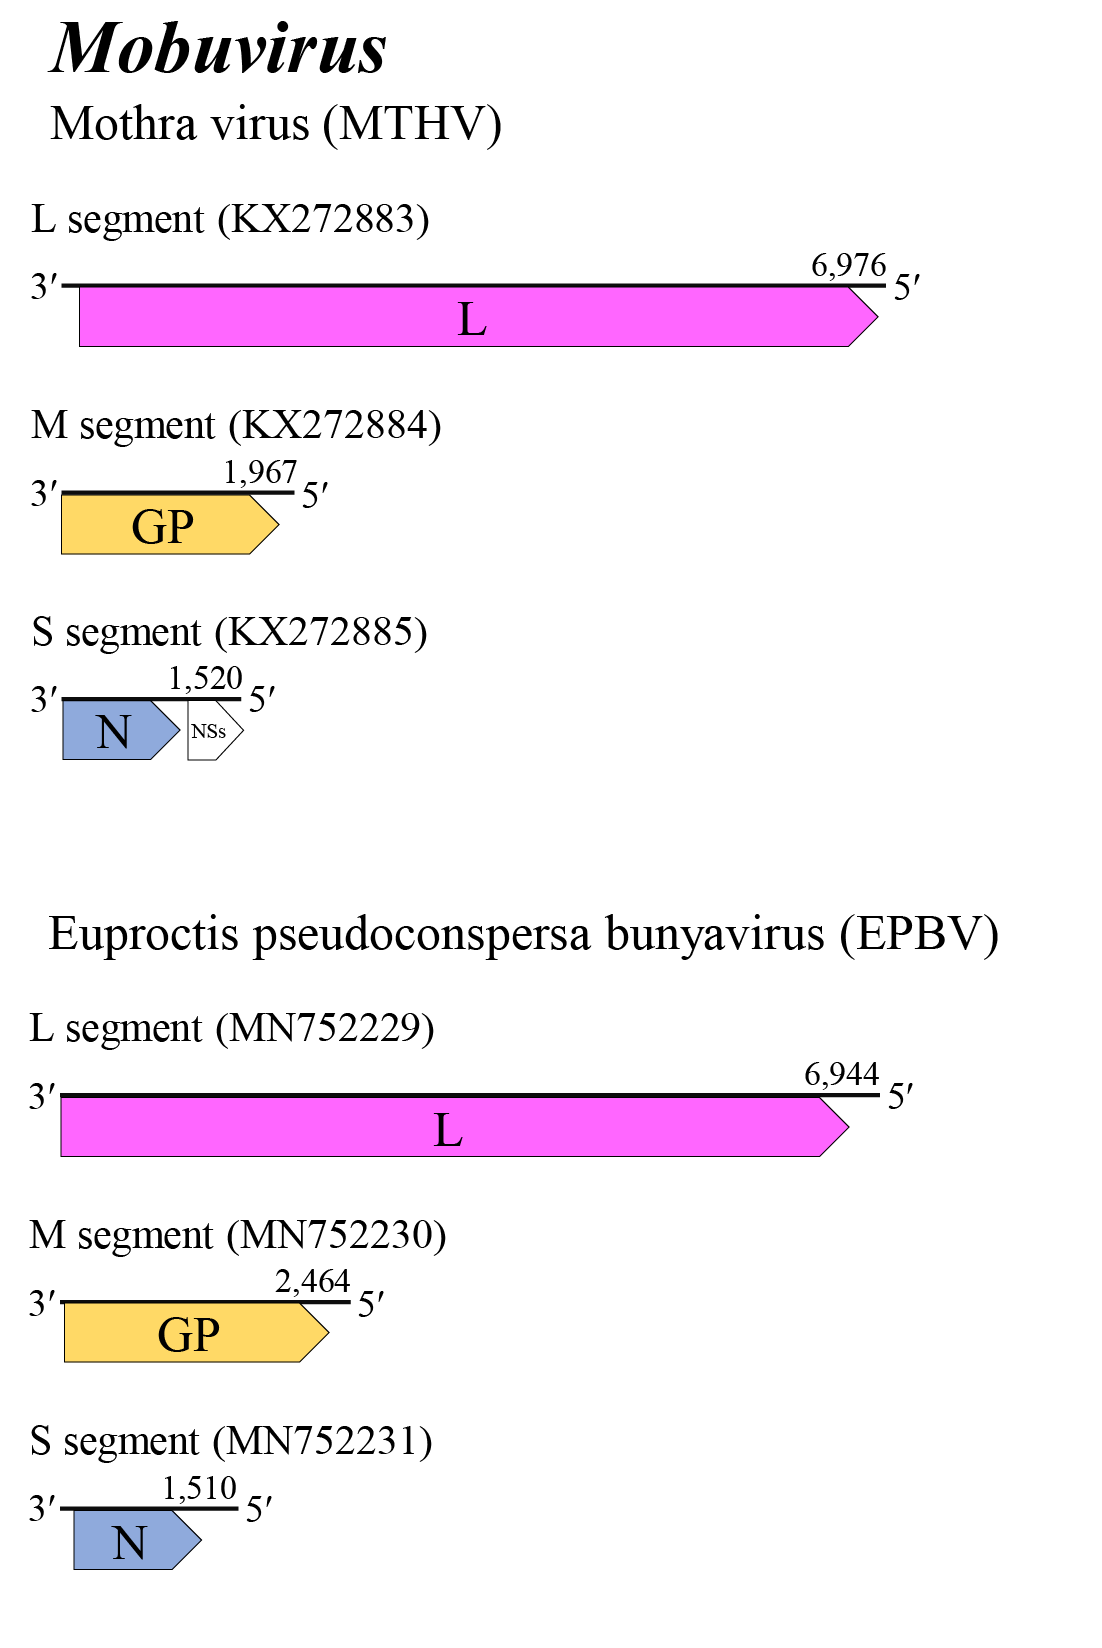 Mobuvirus genome